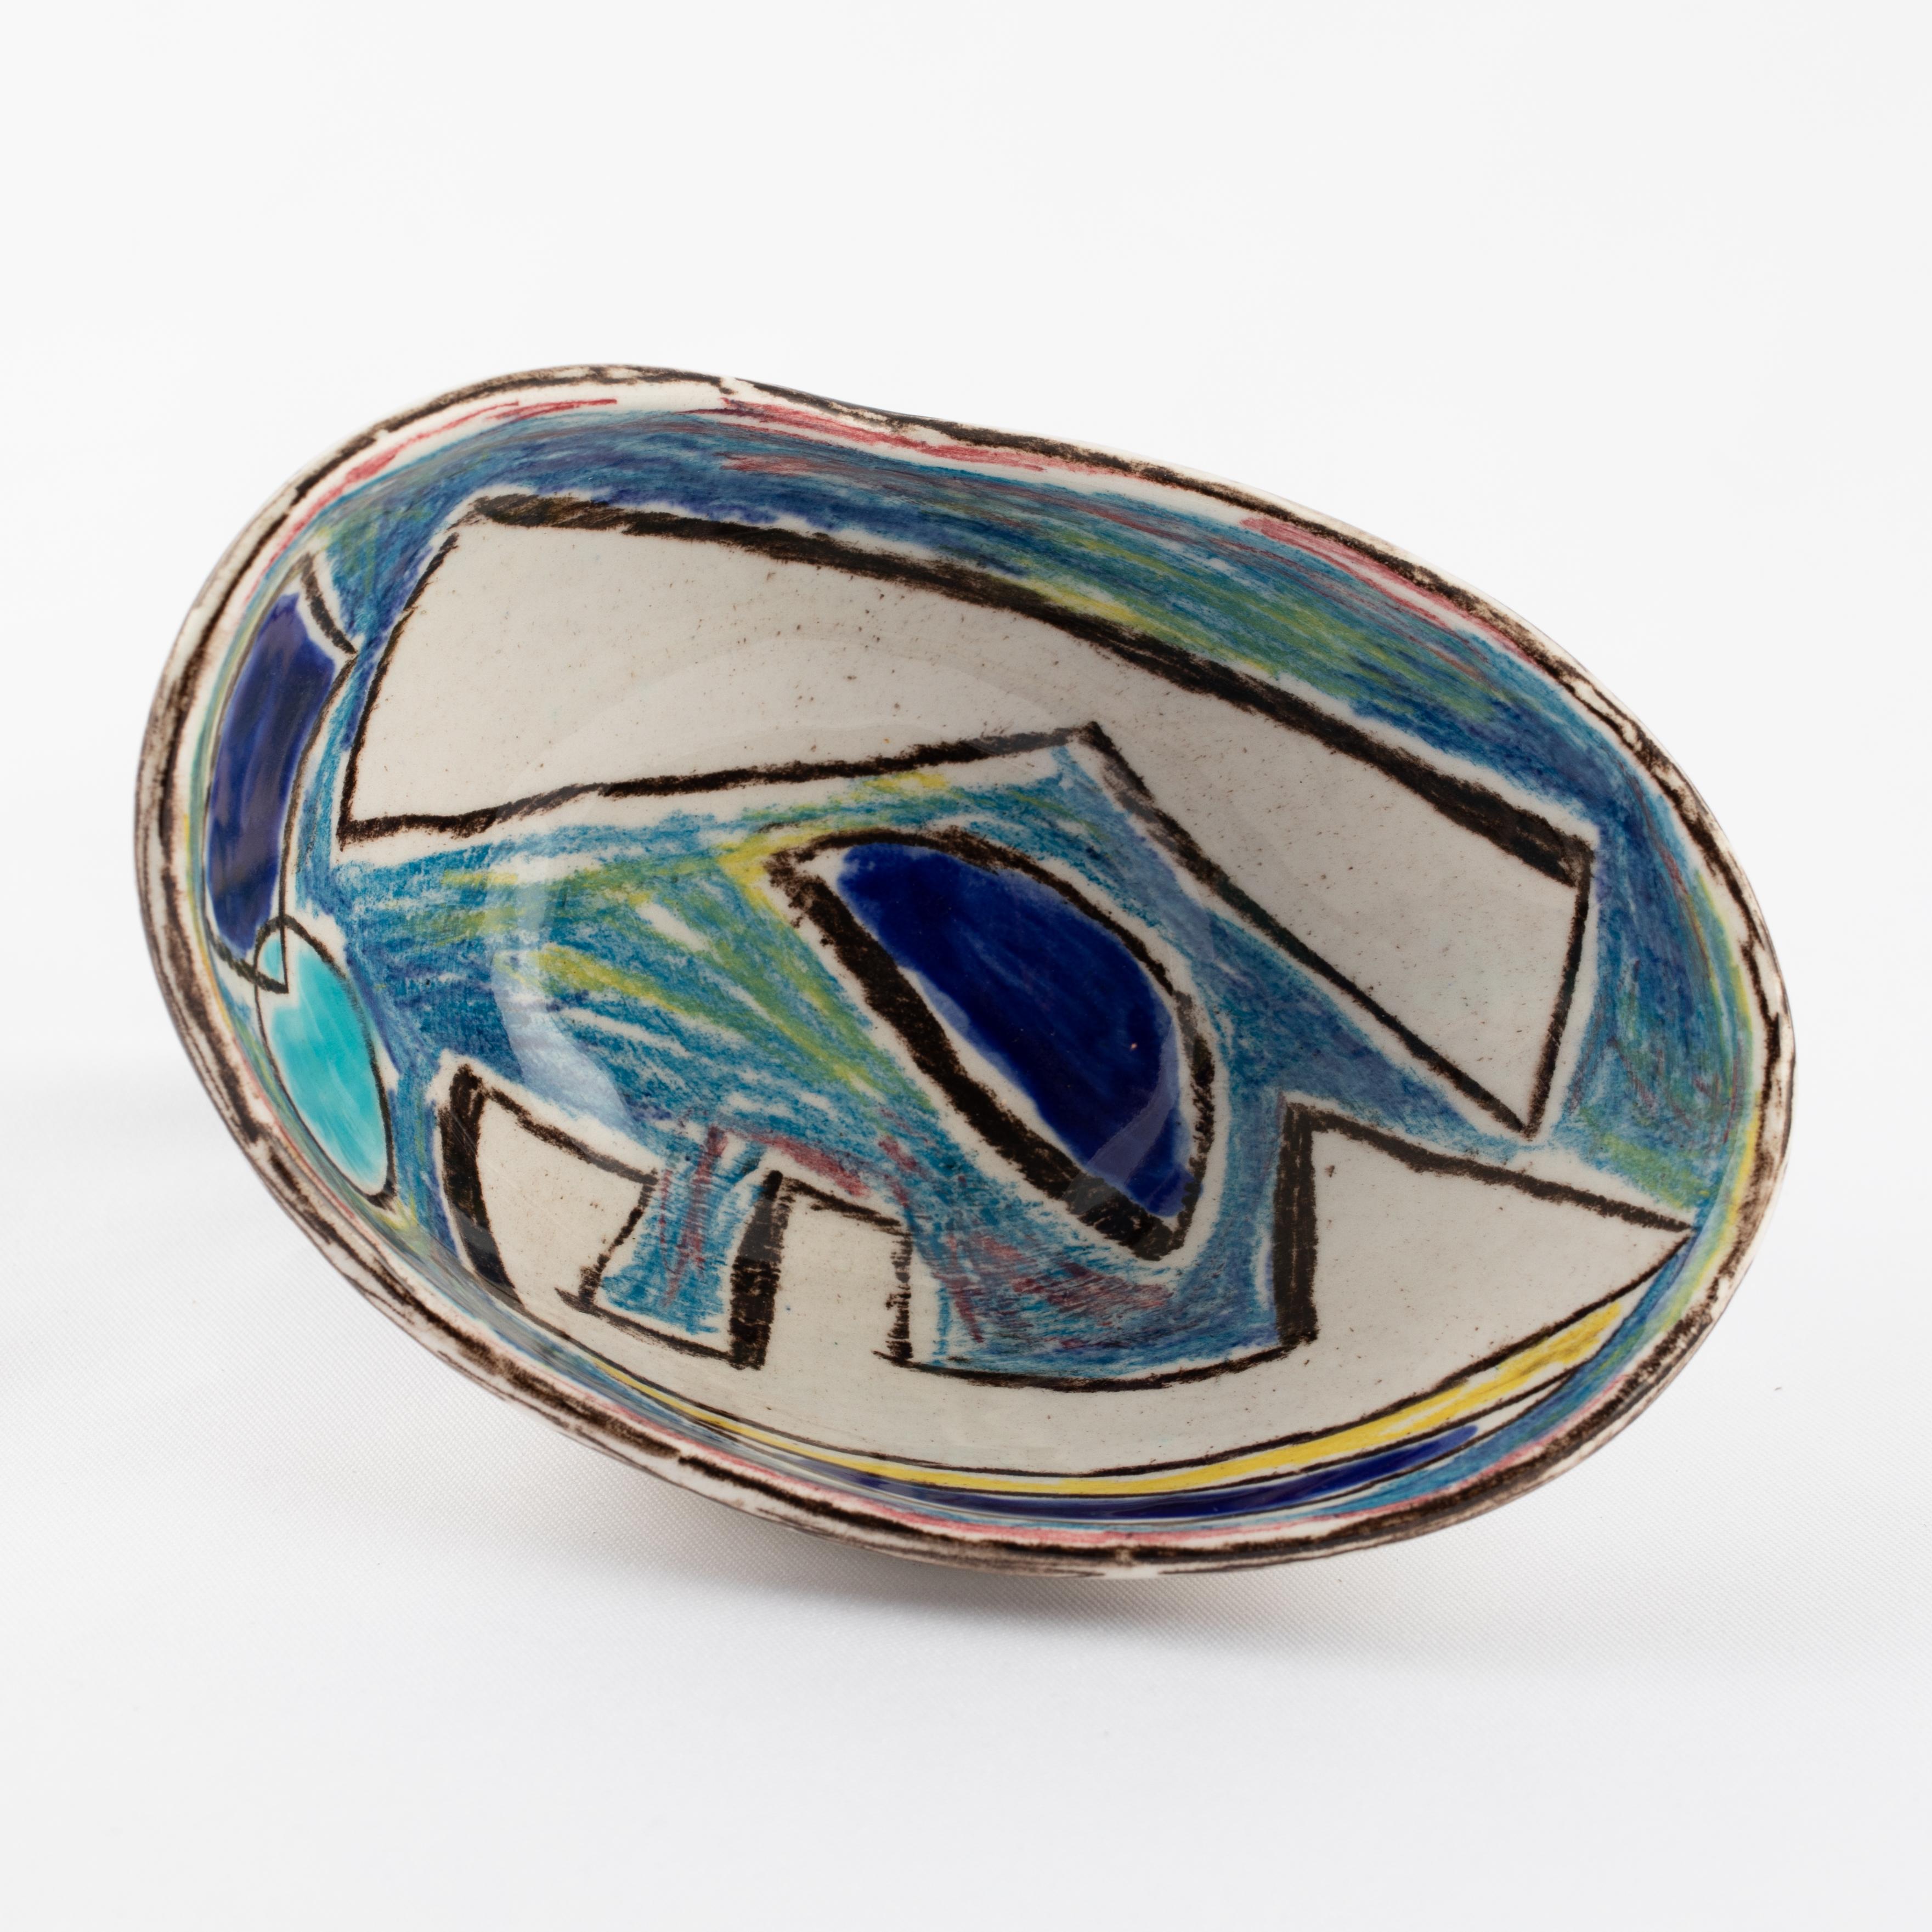 Marcello Fantoni Ceramic Bowl with Abstract Design, circa 1960s For Sale 3